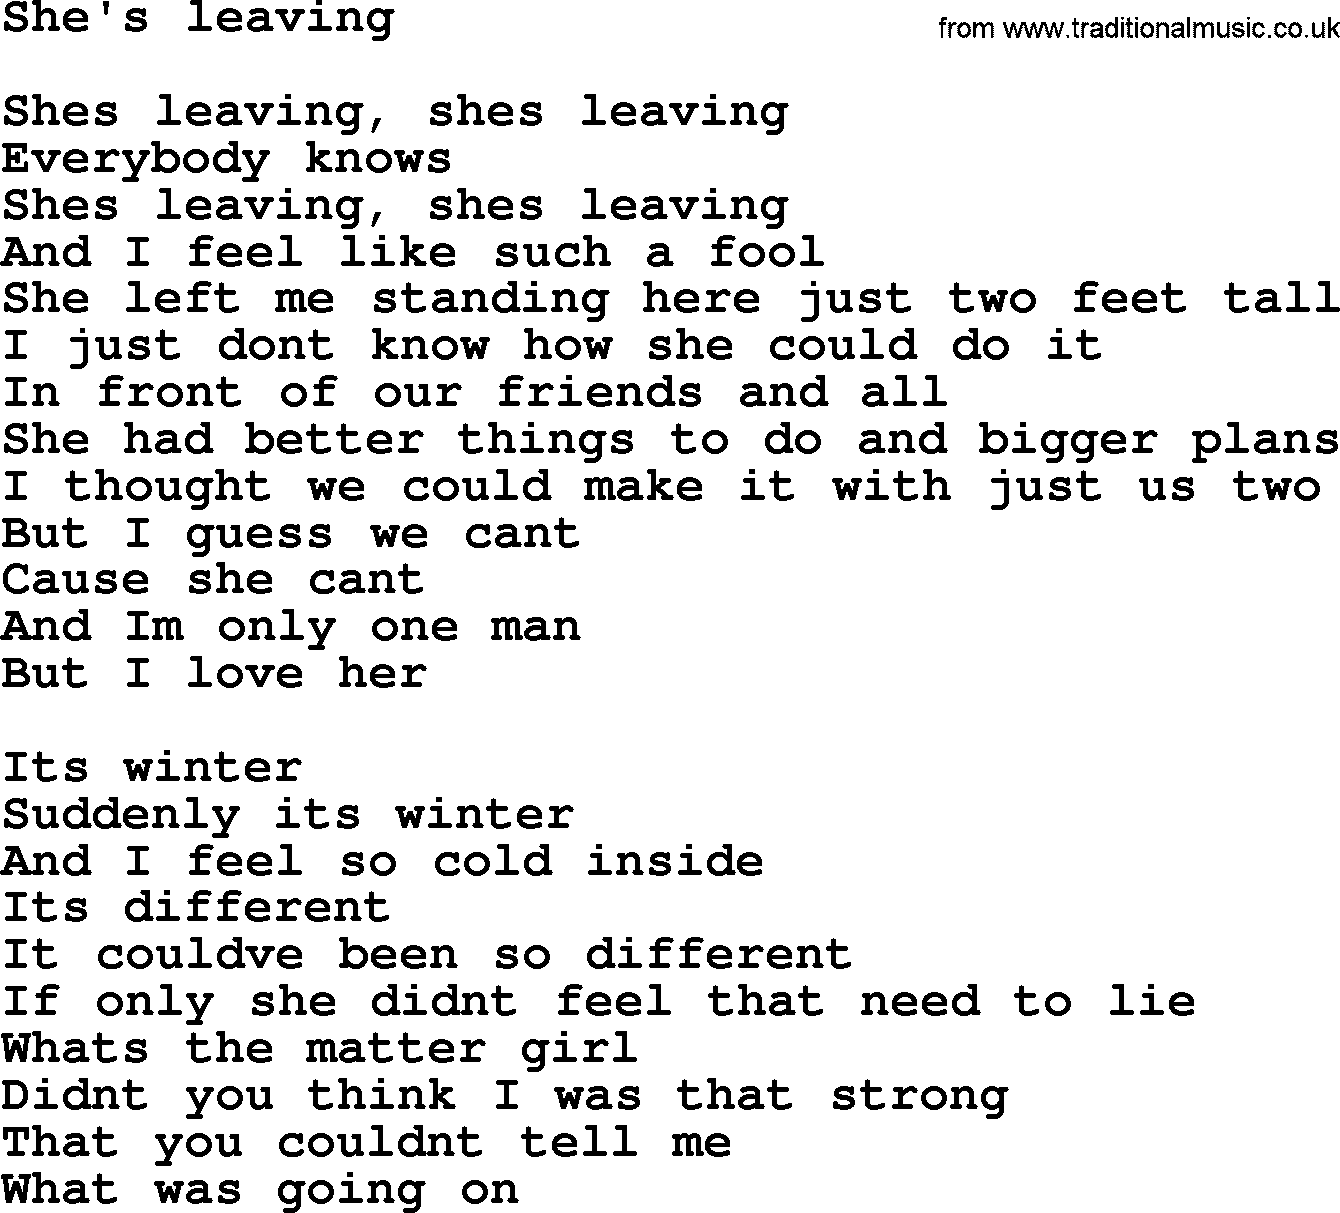 Bruce Springsteen song: She's Leaving lyrics